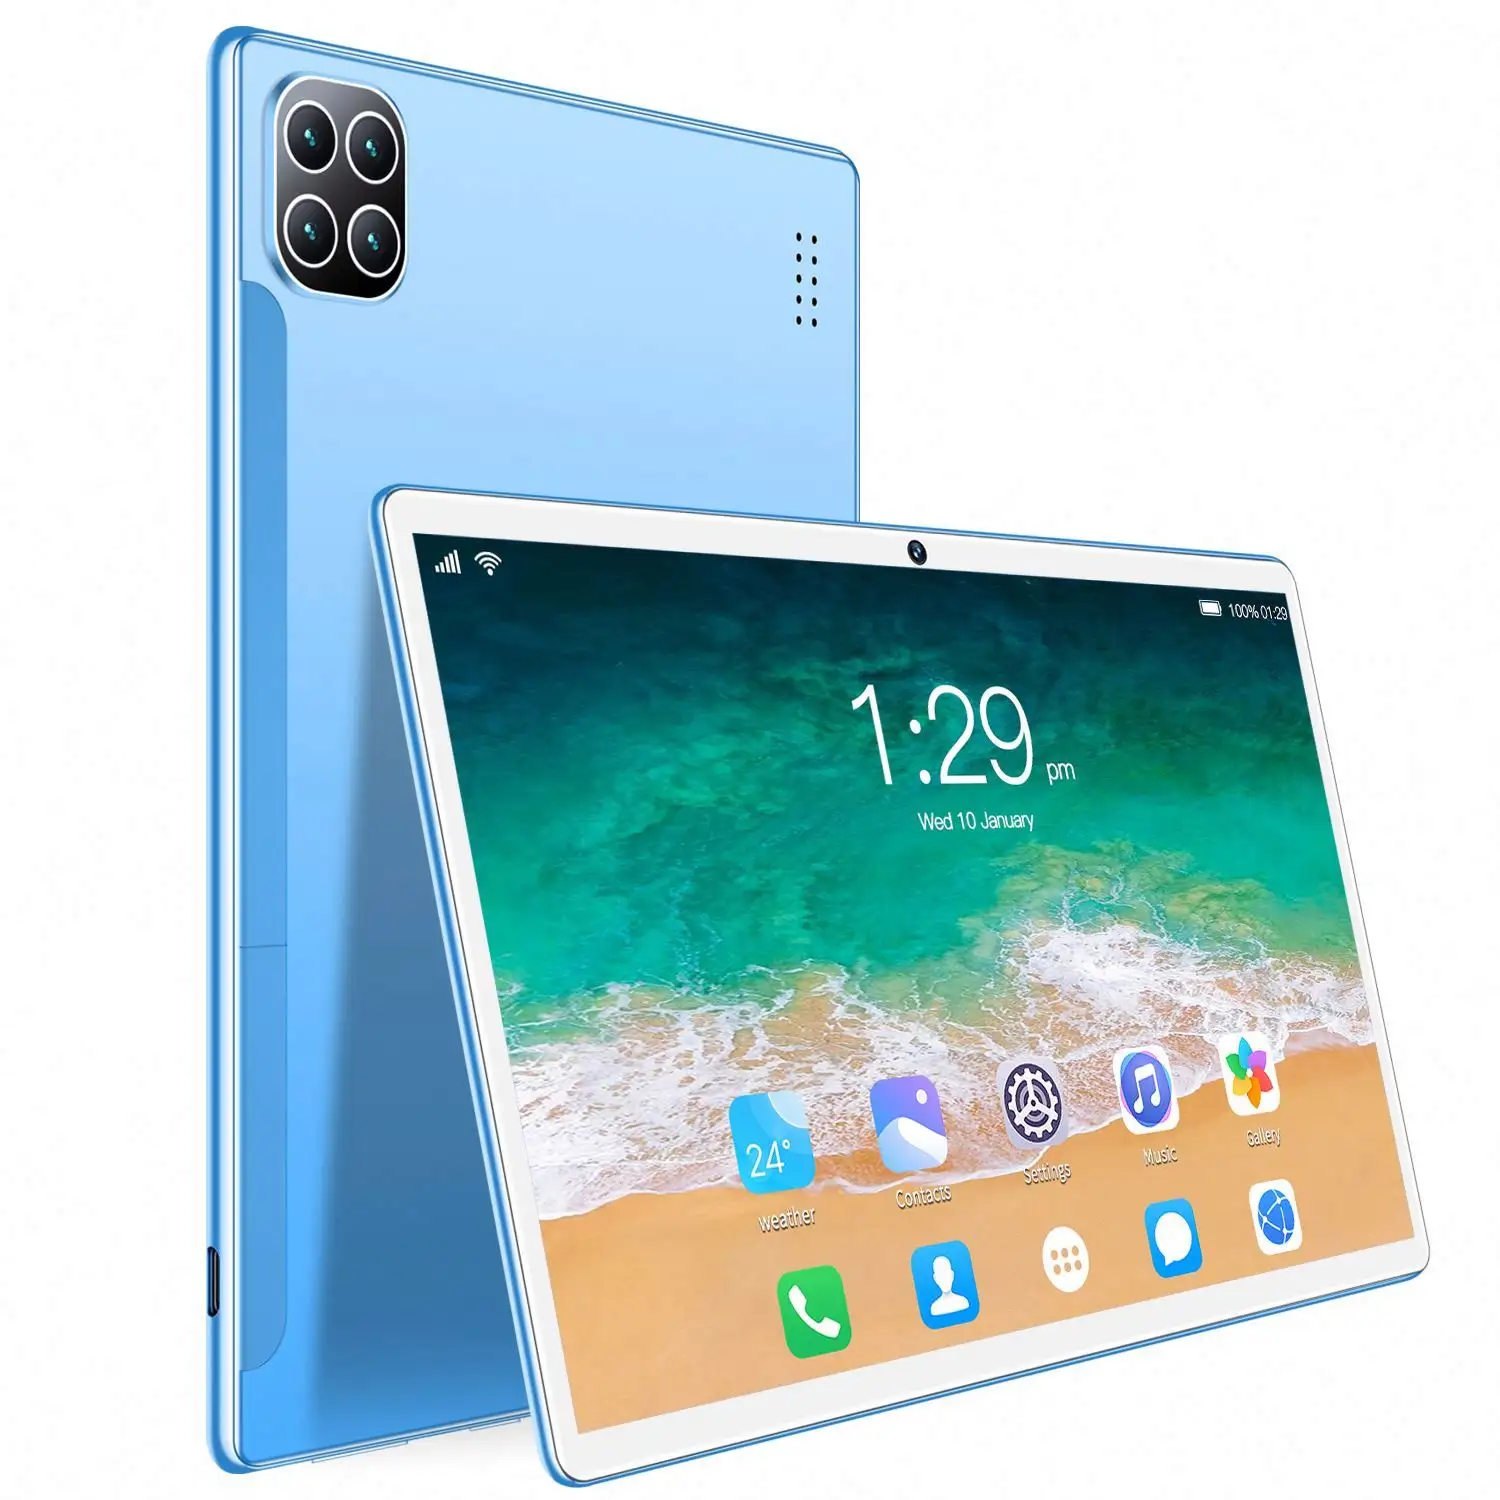 OEM gümrük Tablet 14 inç Android Kids 97 Wifi cep telefonu büyük ekran Android Tablet çocuklar Tablet için eğitim